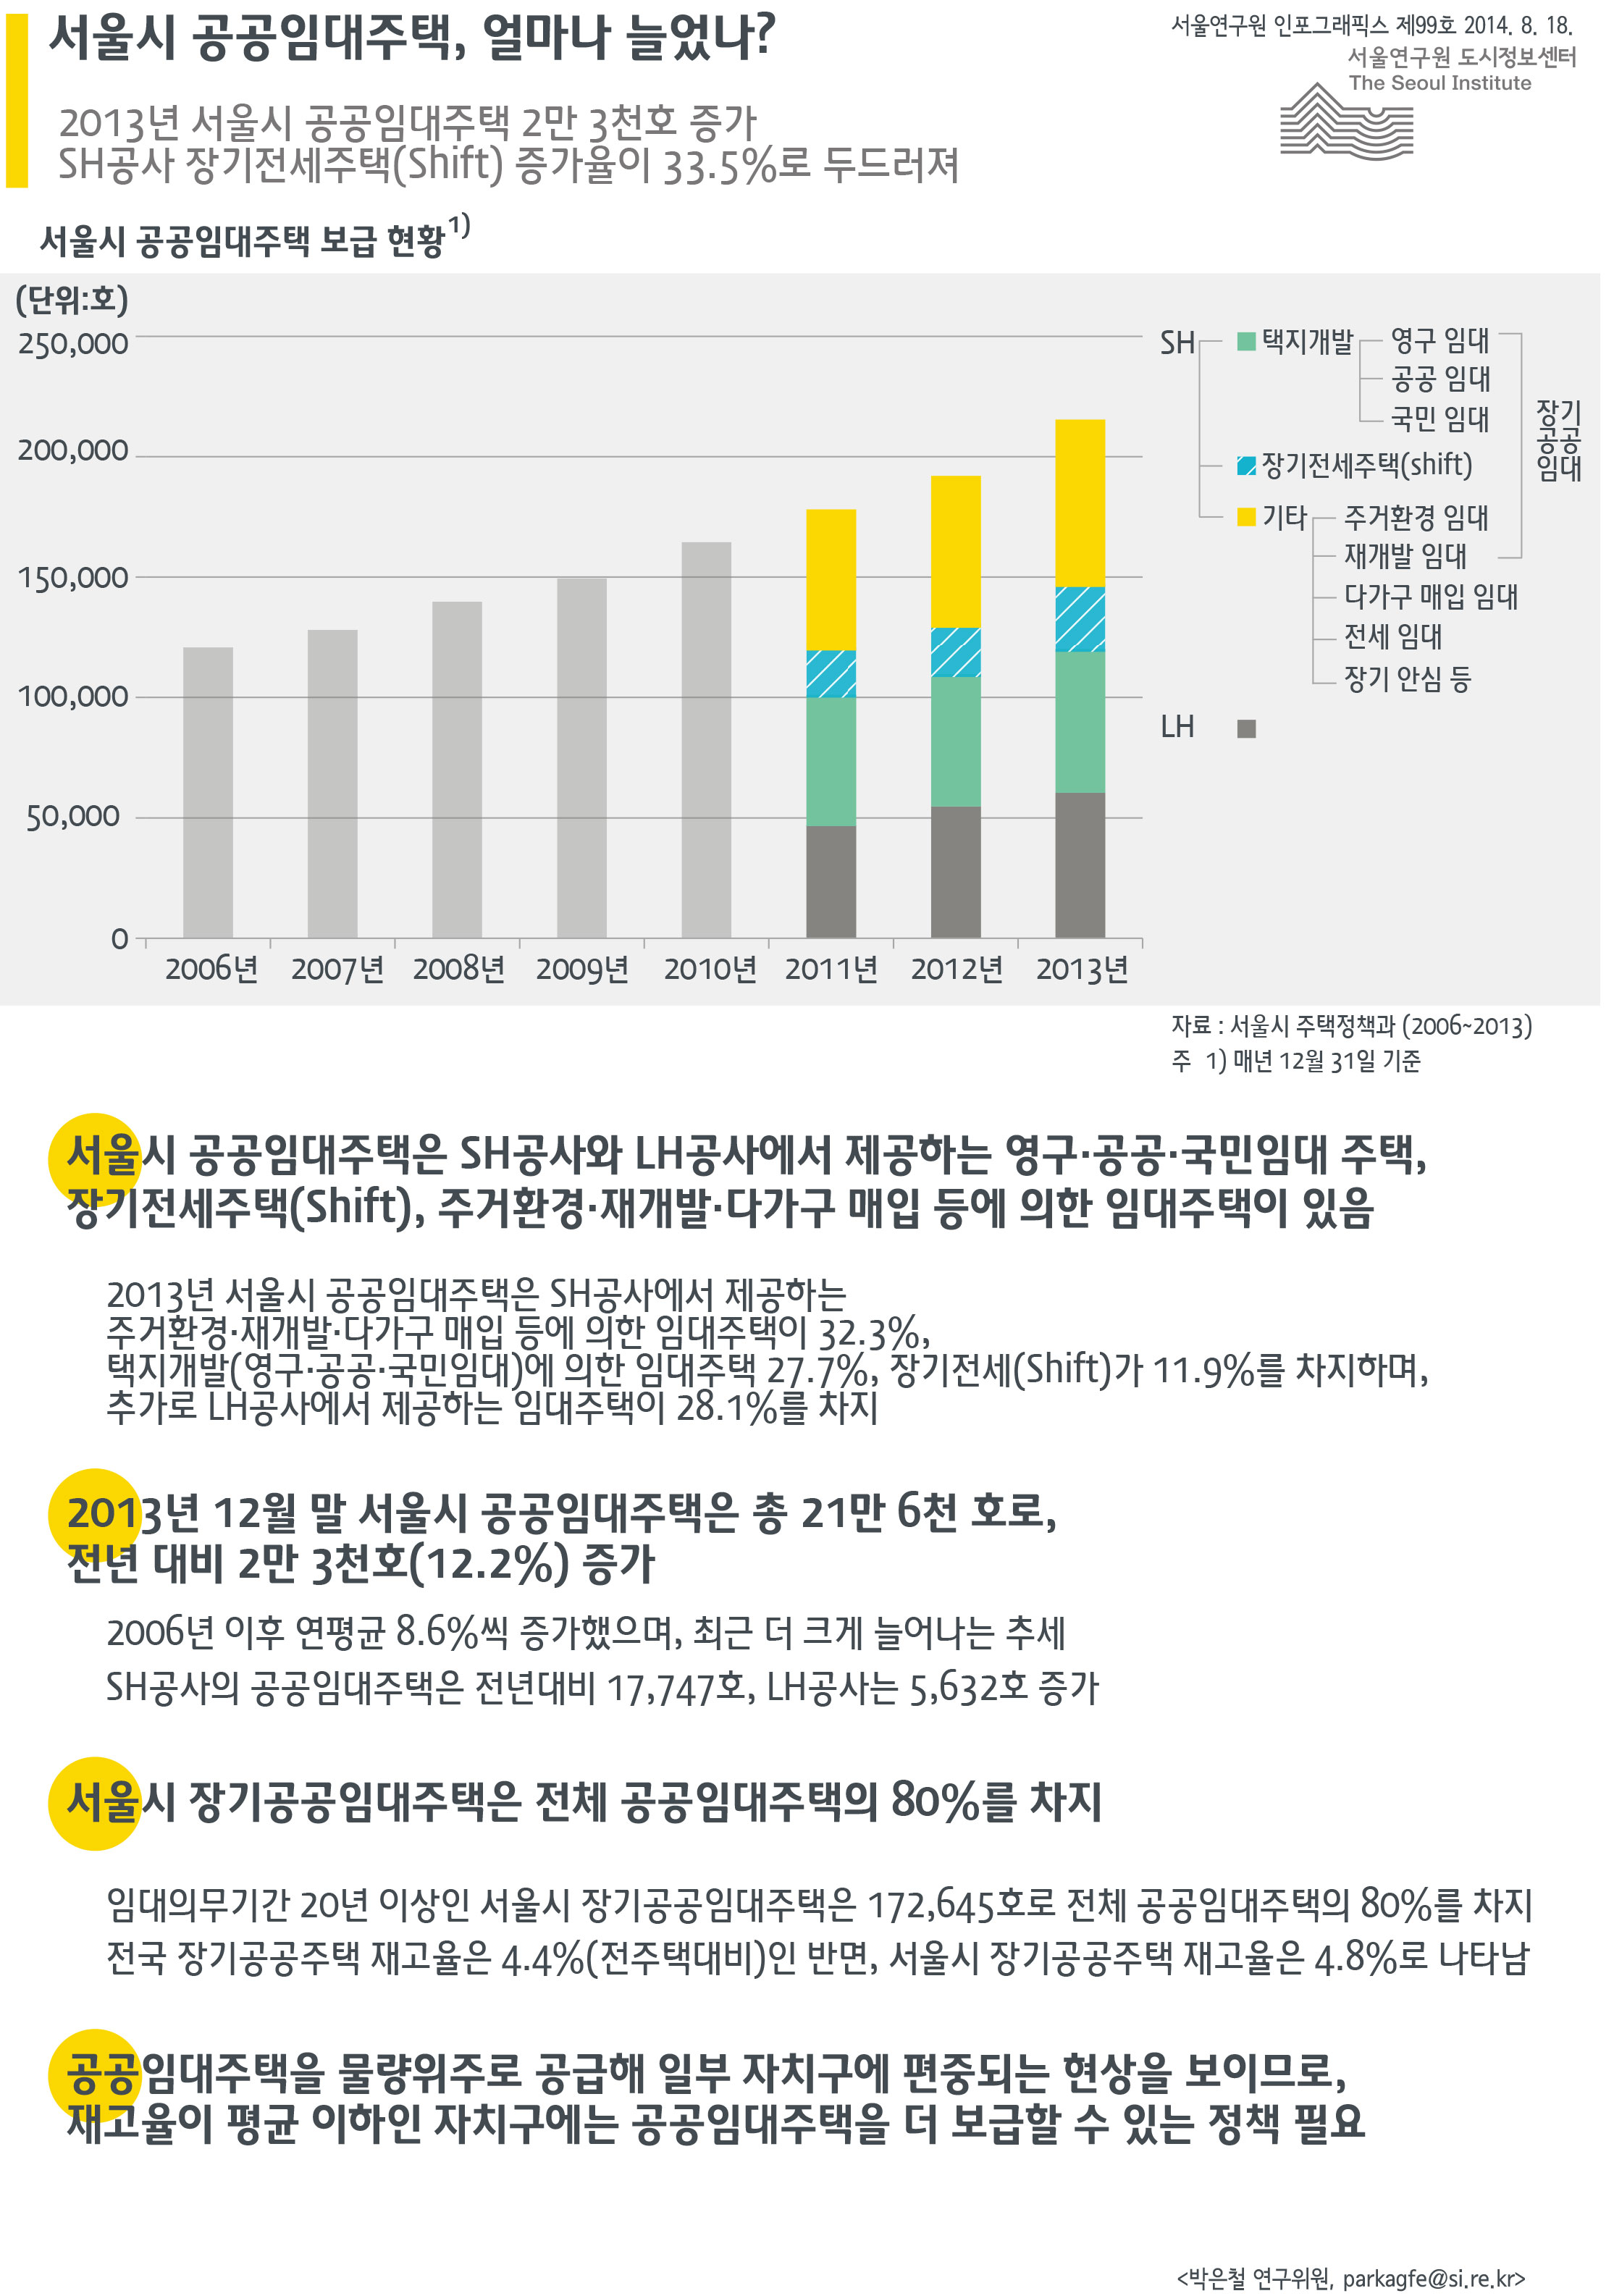 서울시 공공임대주택, 얼마나 늘었나? 서울인포그래픽스 제99호 2014녀 8월 18일 2013년 서울시 공공임대주택 2만 3천호 증가. SH공사 장기전세주택(Shift) 증가율이 33.5%로 두드러짐으로 정리될 수 있습니다. 인포그래픽으로 제공되는 그래픽은 하단에 표로 자세히 제공됩니다.